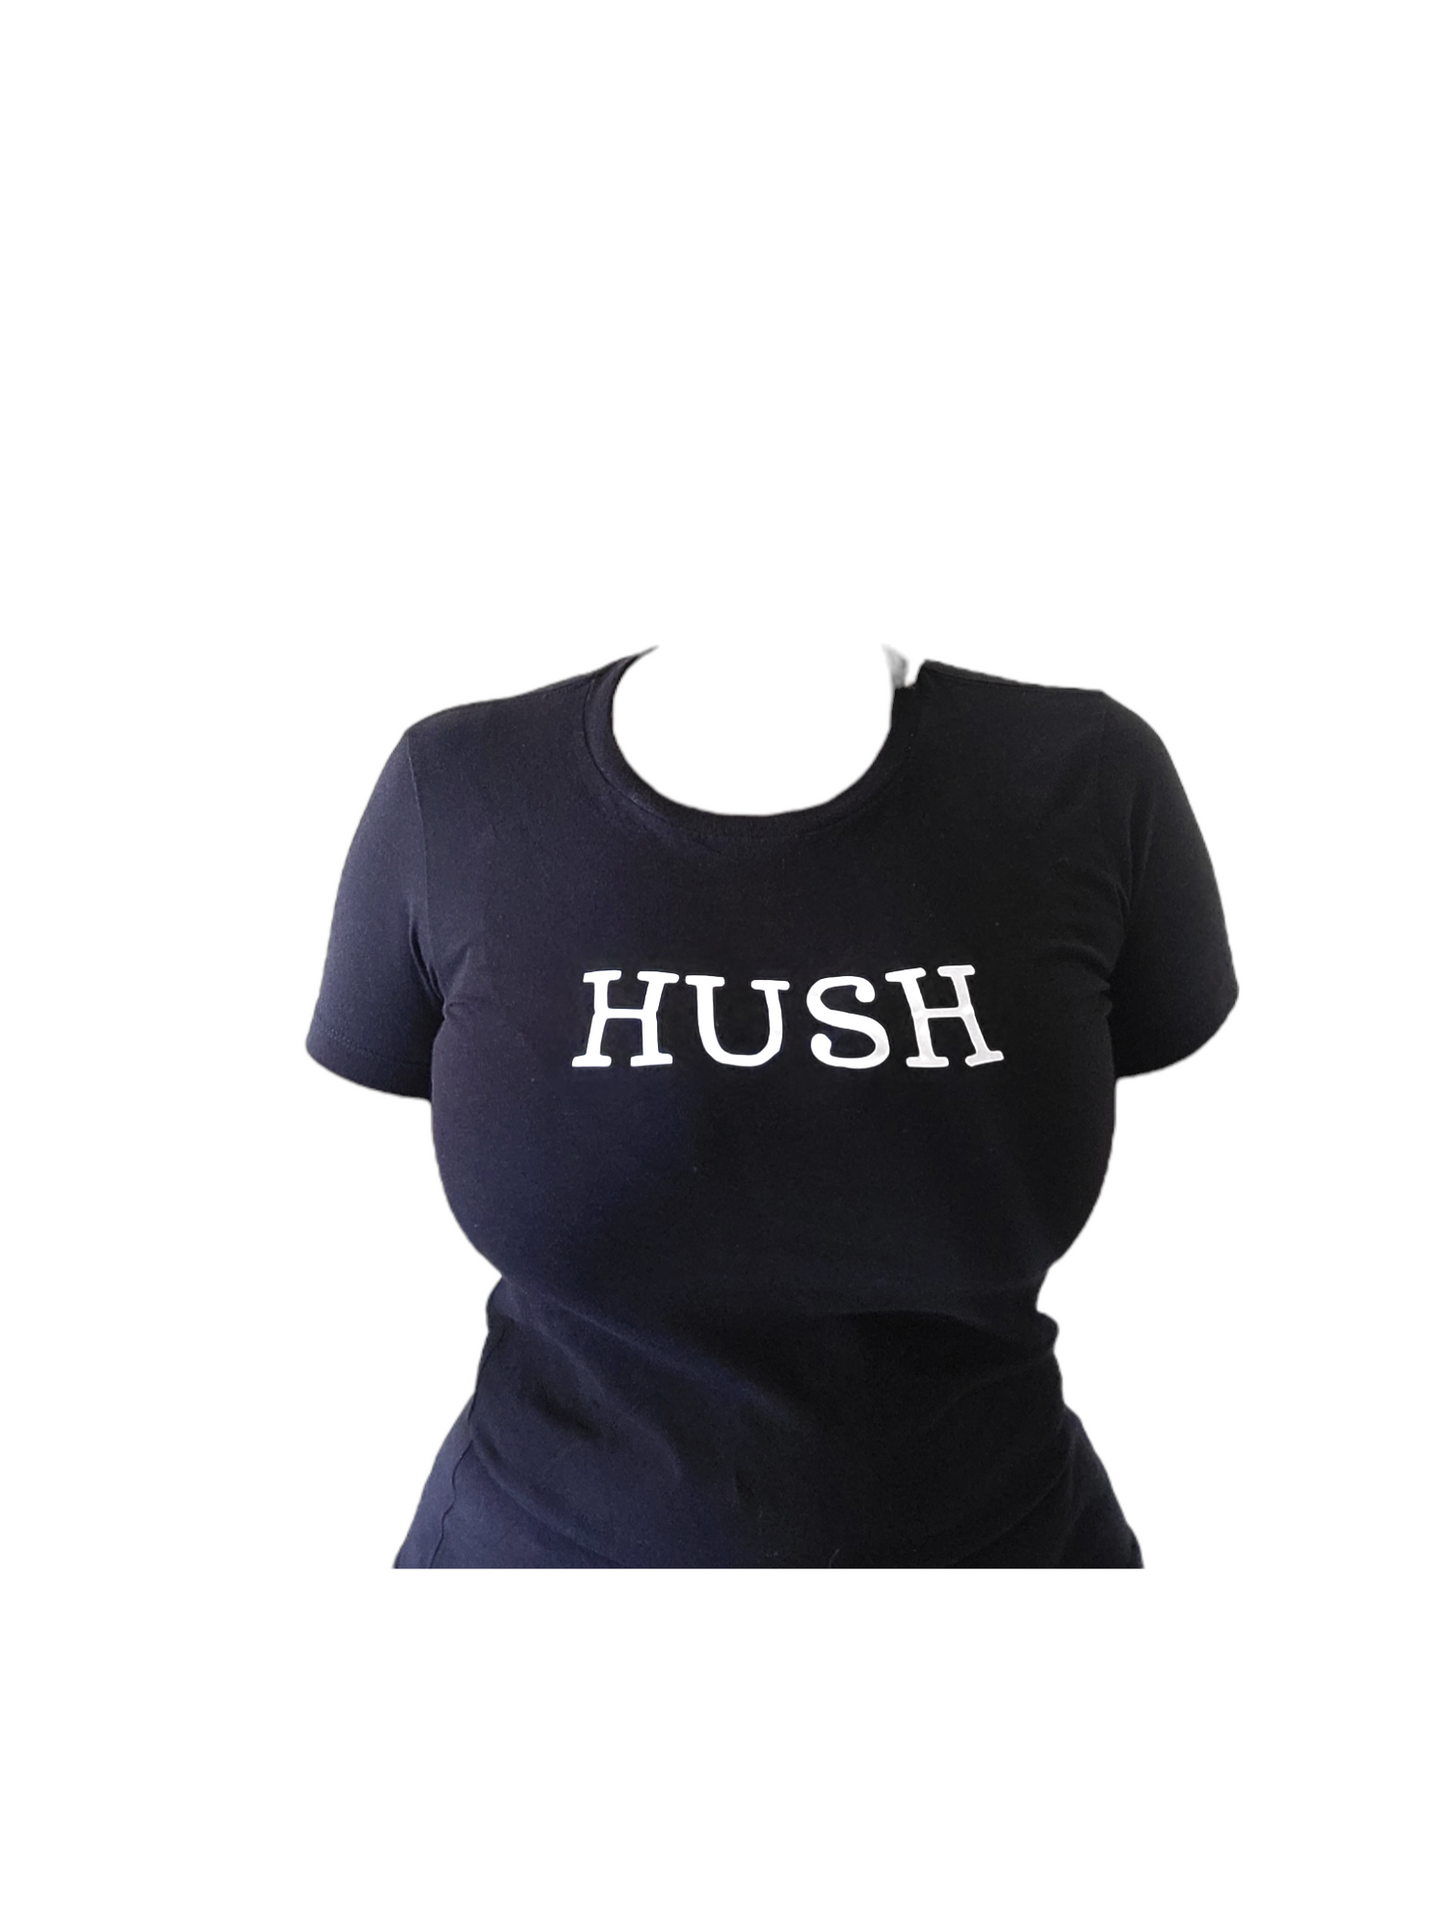 HUSH t-shirt women